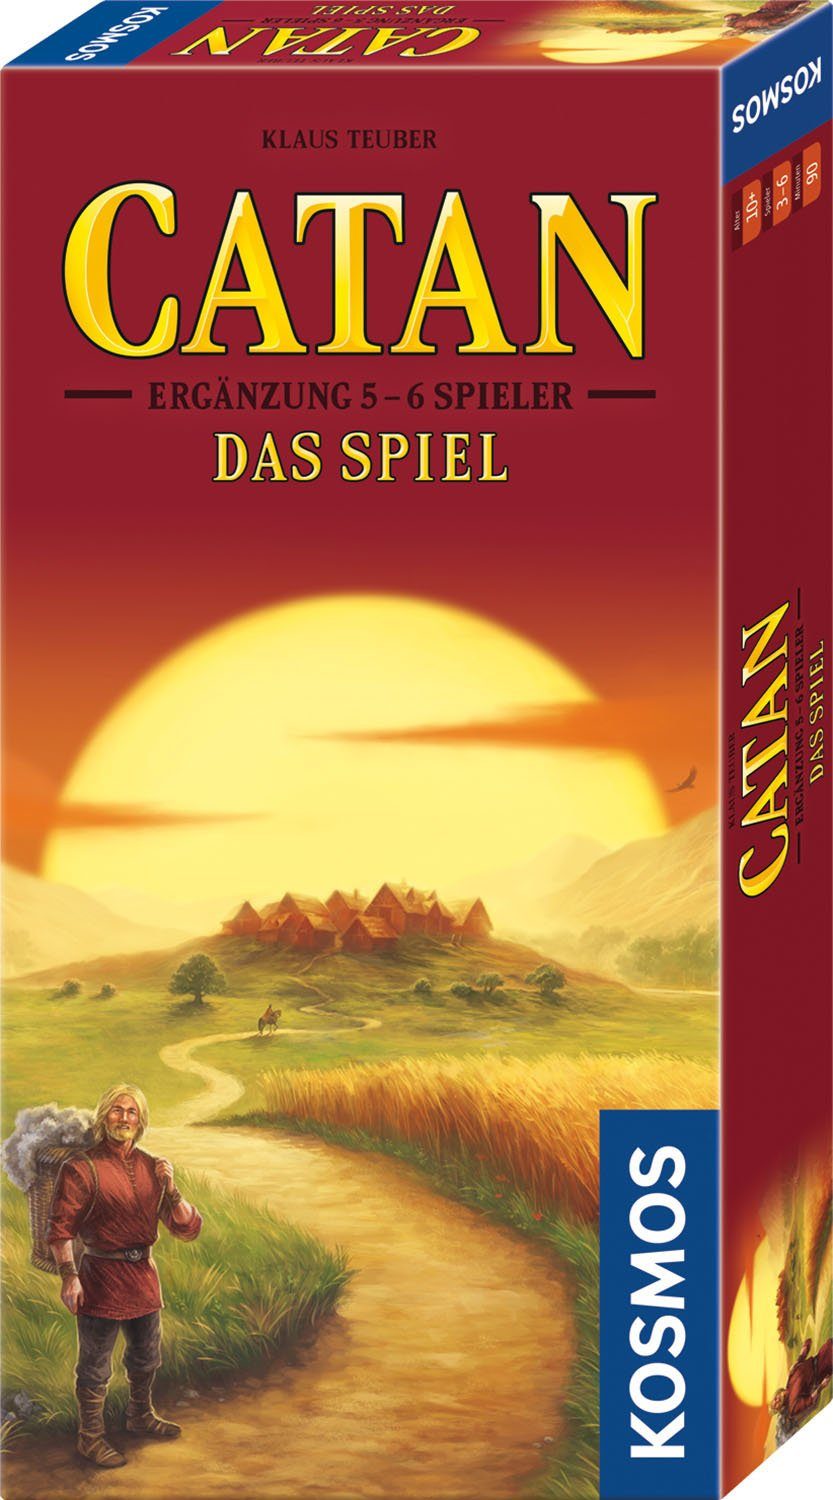 Kosmos Spiel, Catan - Das Spiel - Ergänzung 5-6 Ігриr - Edition 2022, Made in Germany